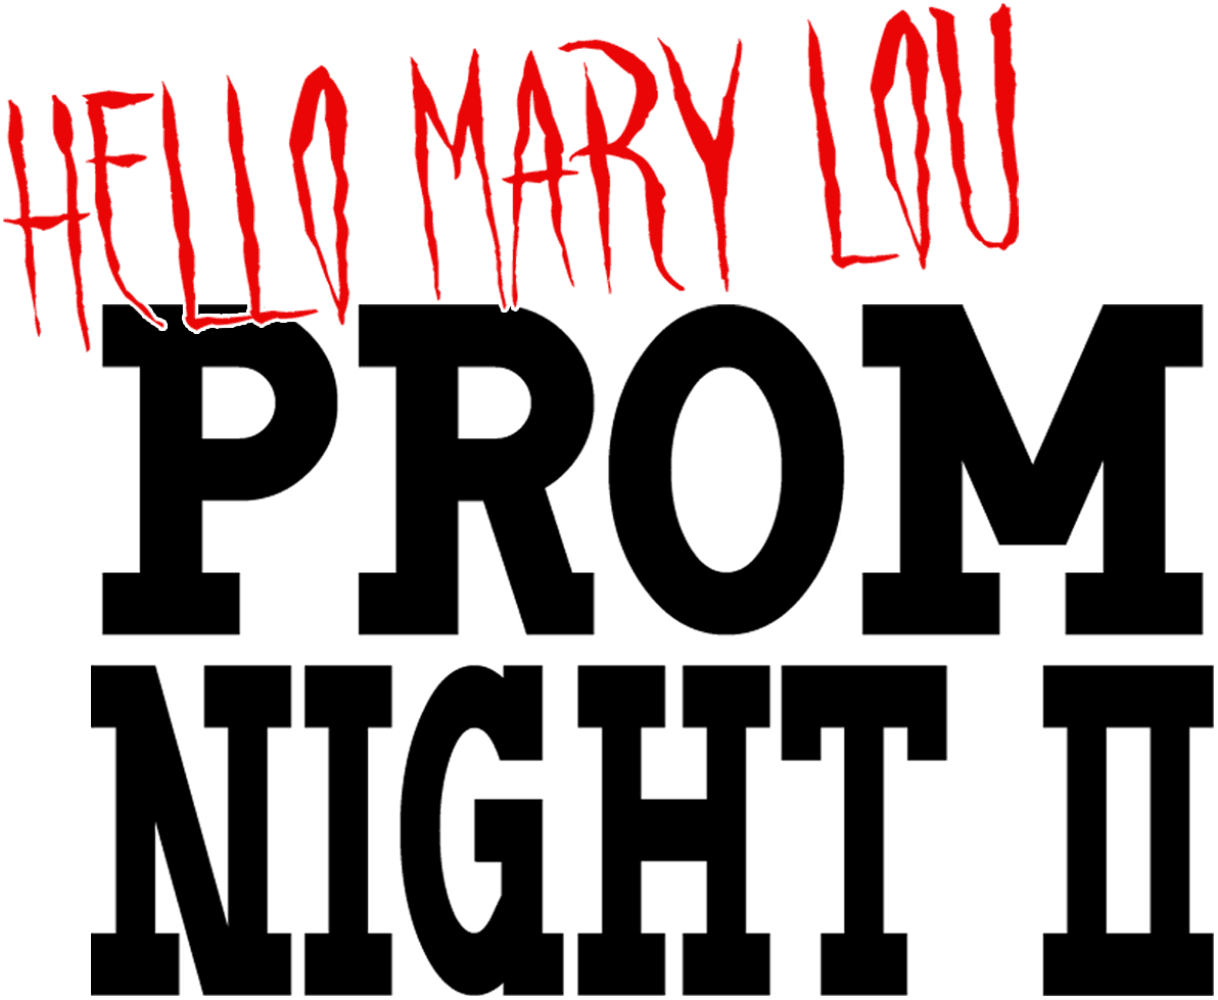 Hello Mary Lou: Prom Night II logo